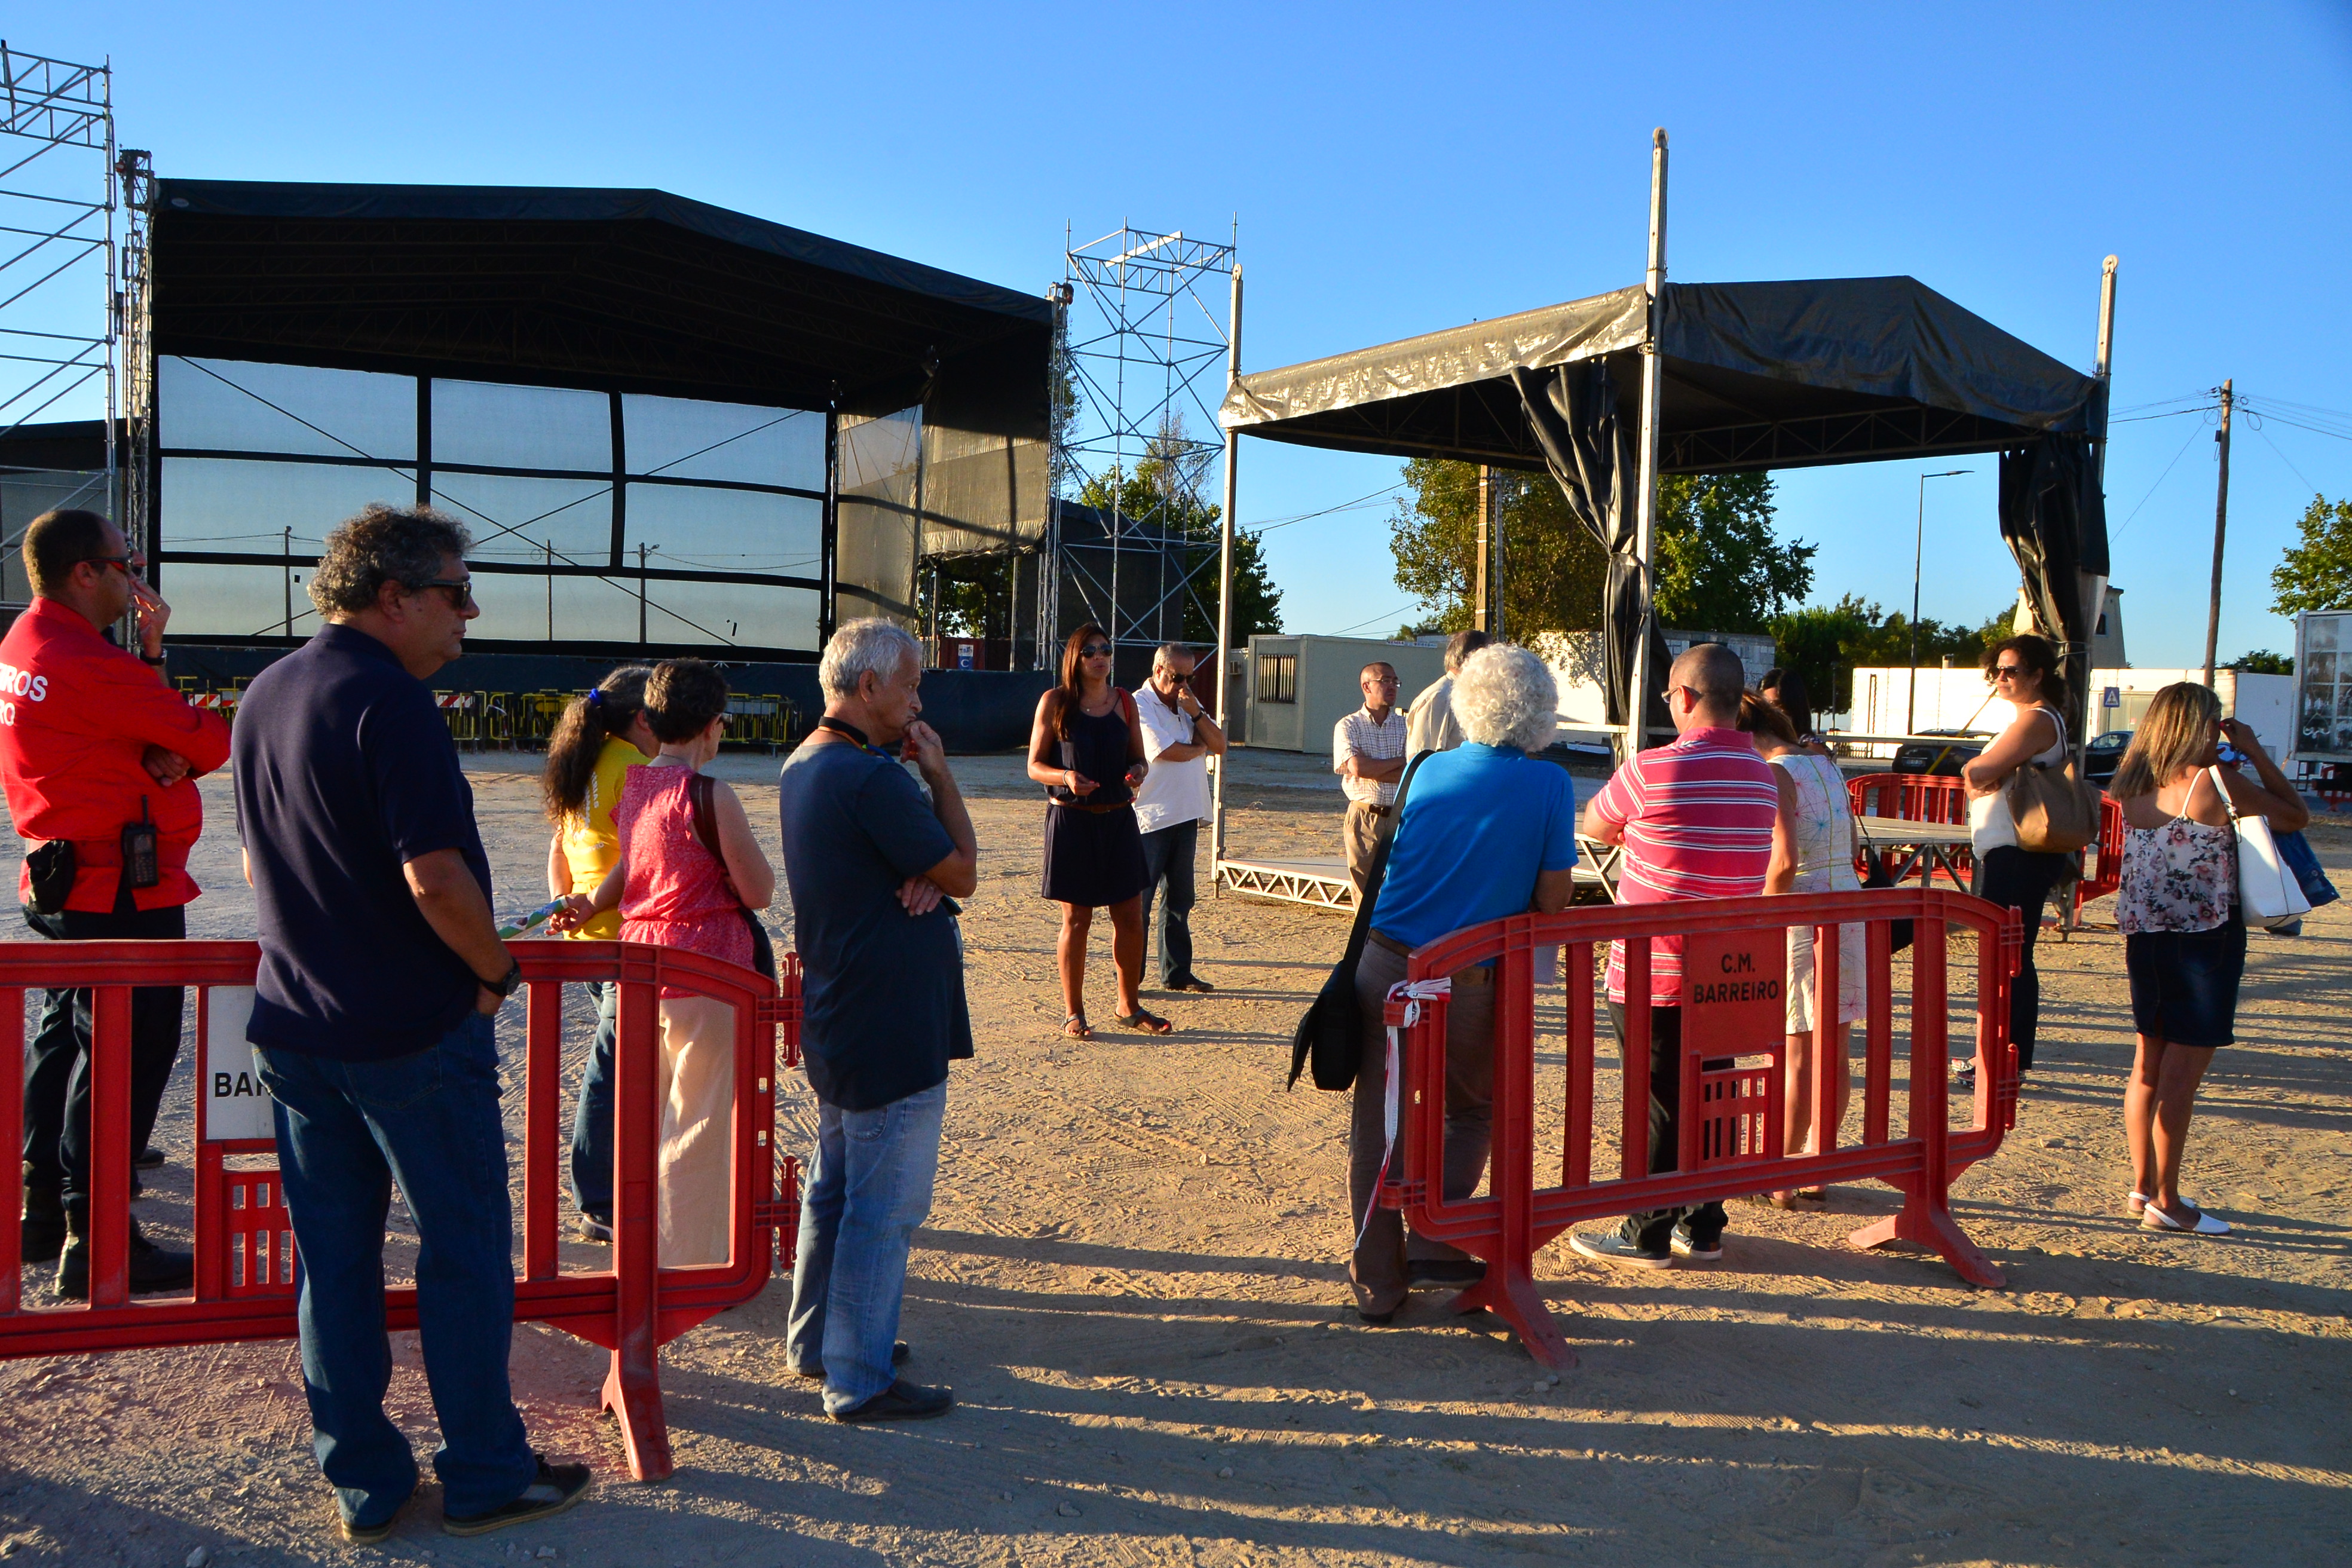 Festas do Barreiro 2015 | Comissão visita o recinto